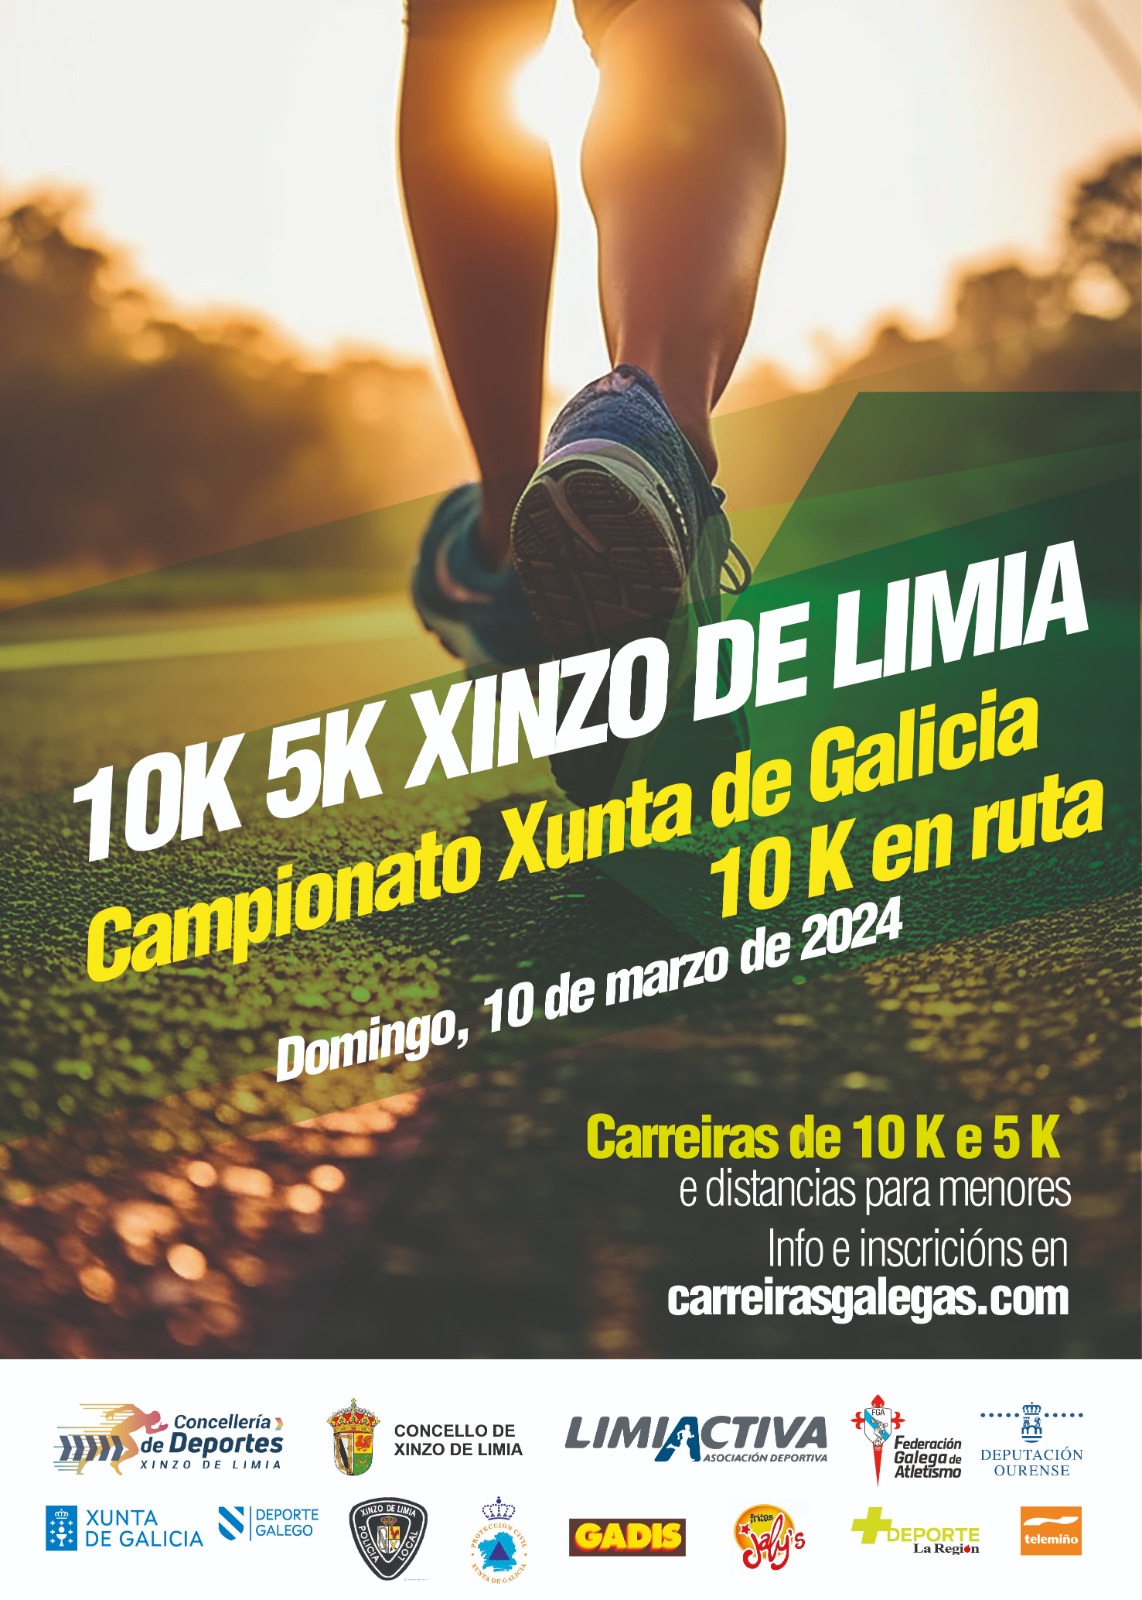 Campionato Xunta de Galicia 10K en ruta